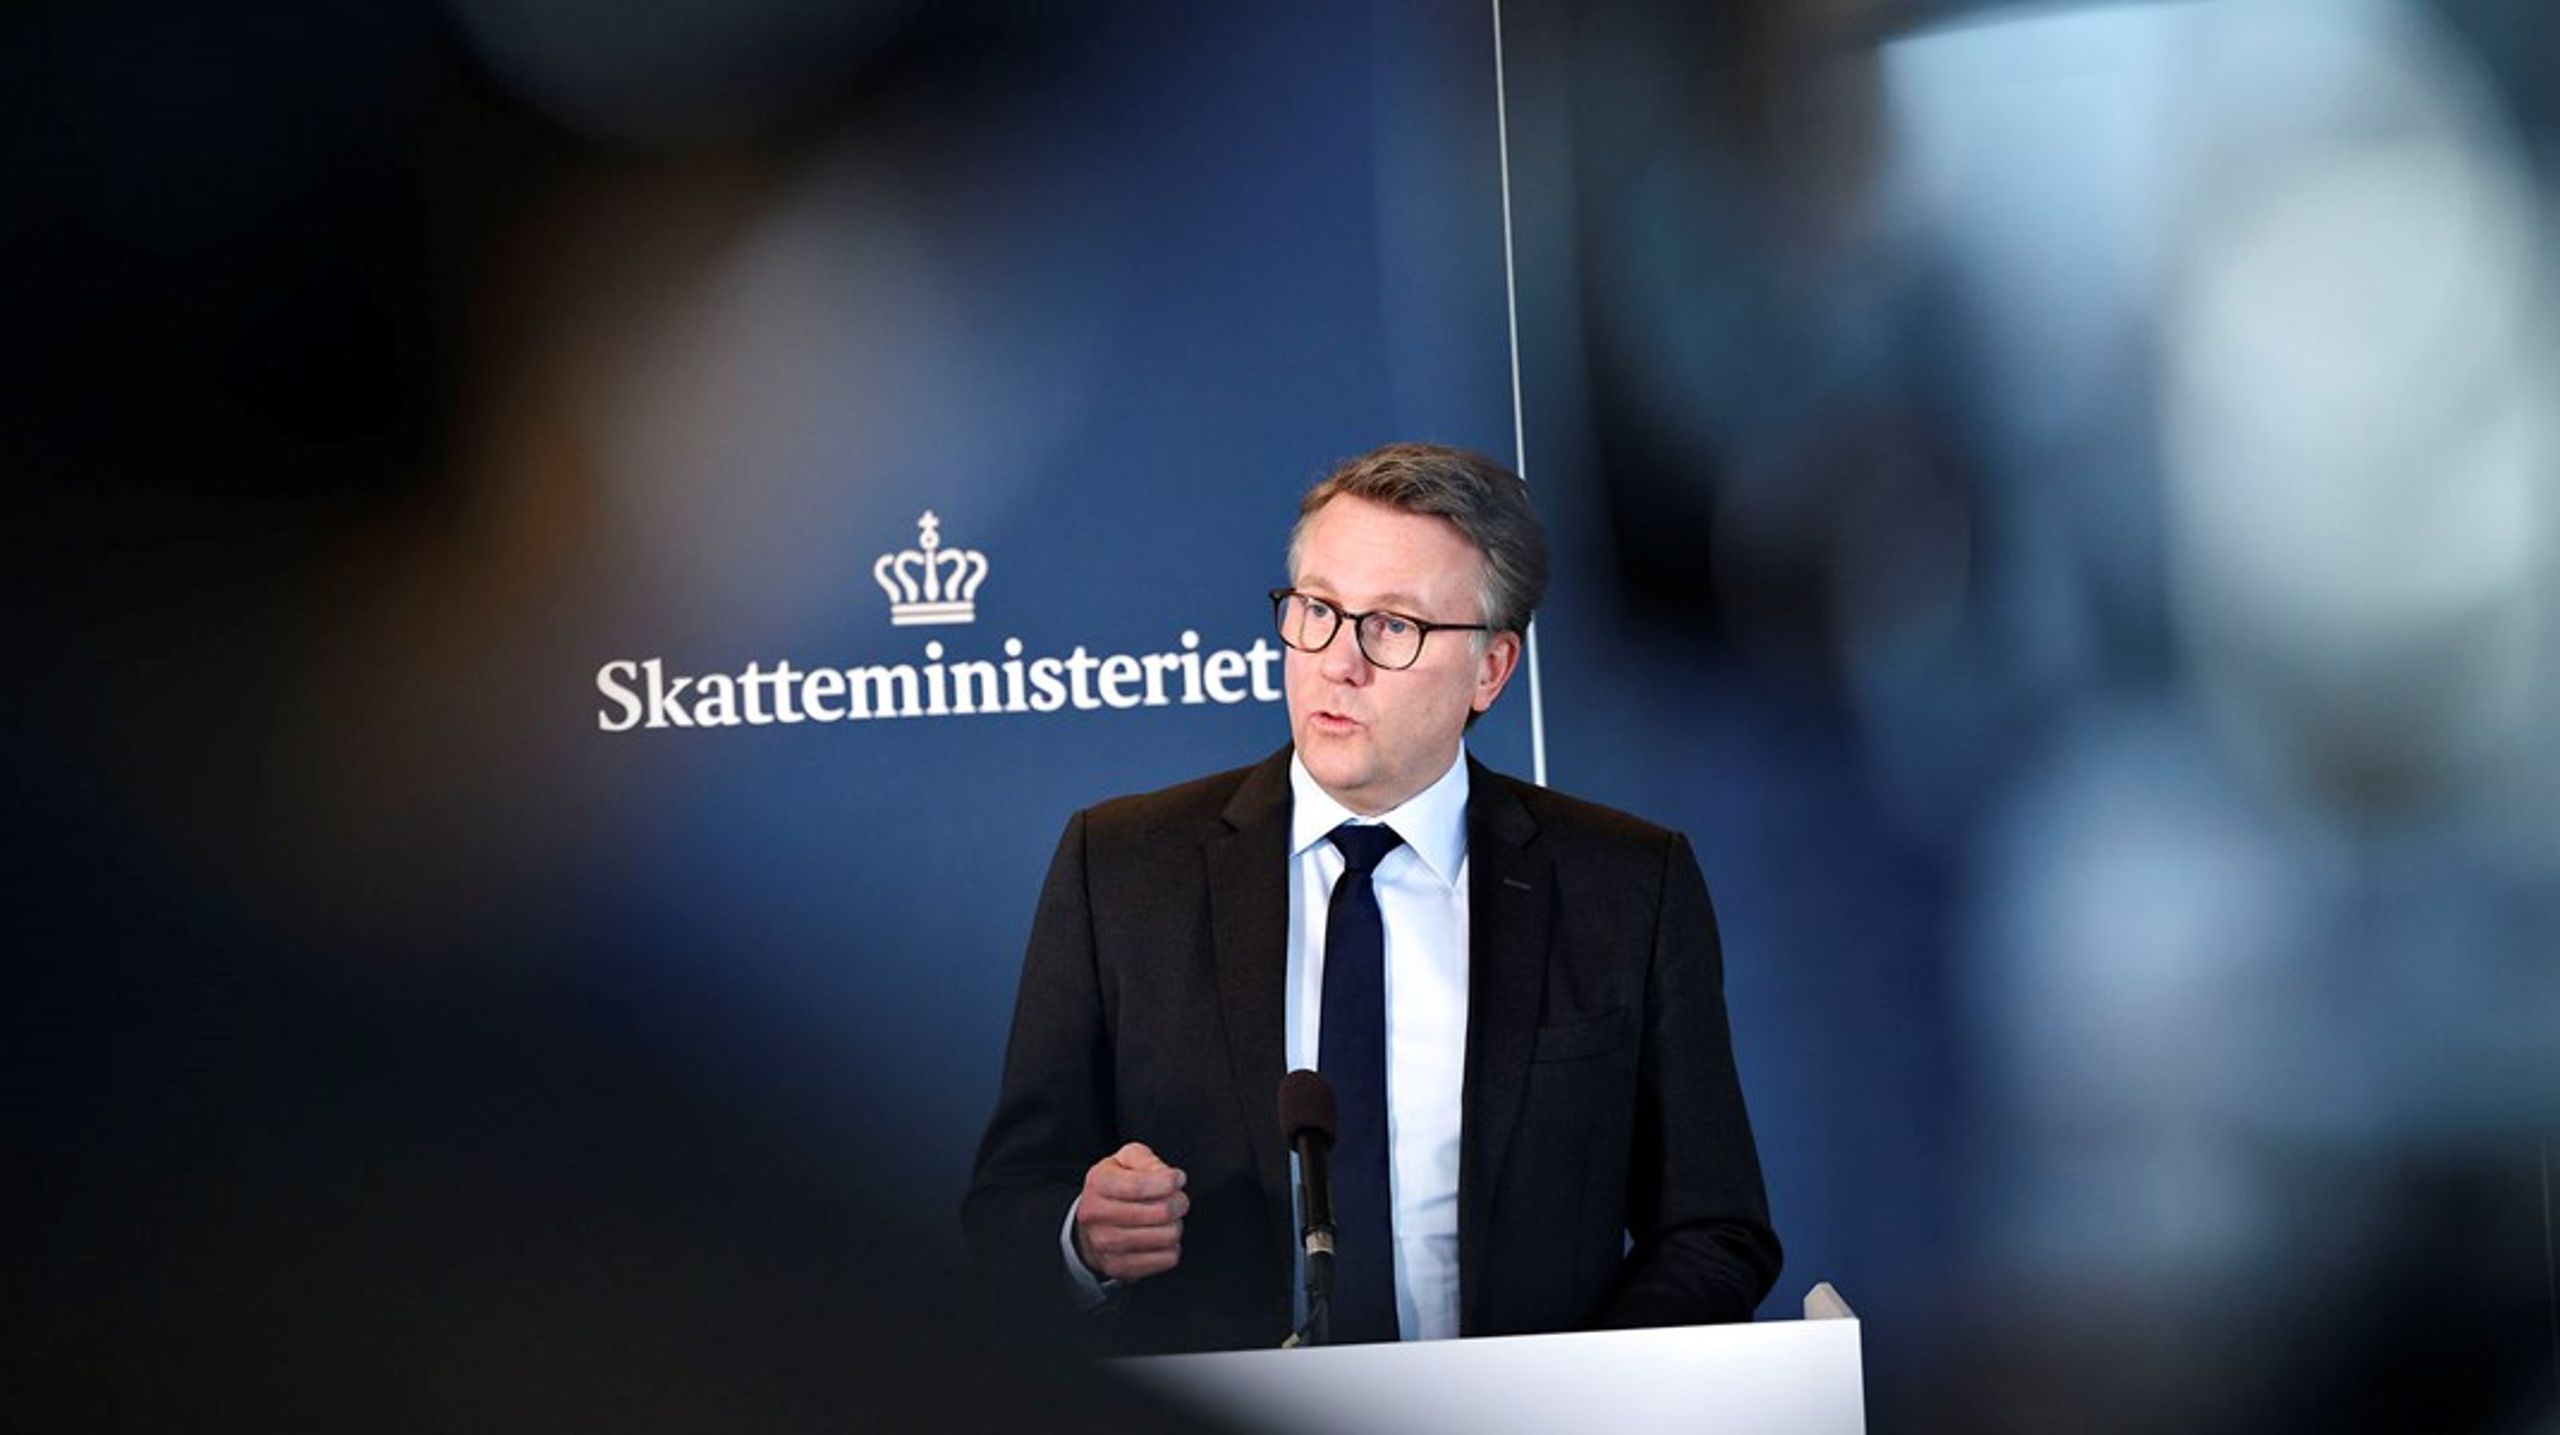 ”Det er helt afgørende, at skattevæsenet kommer på ret kurs," siger skatteminister Morten Bødskov i forbindelse med nedsættelsen af det nye ekspertudvalg.